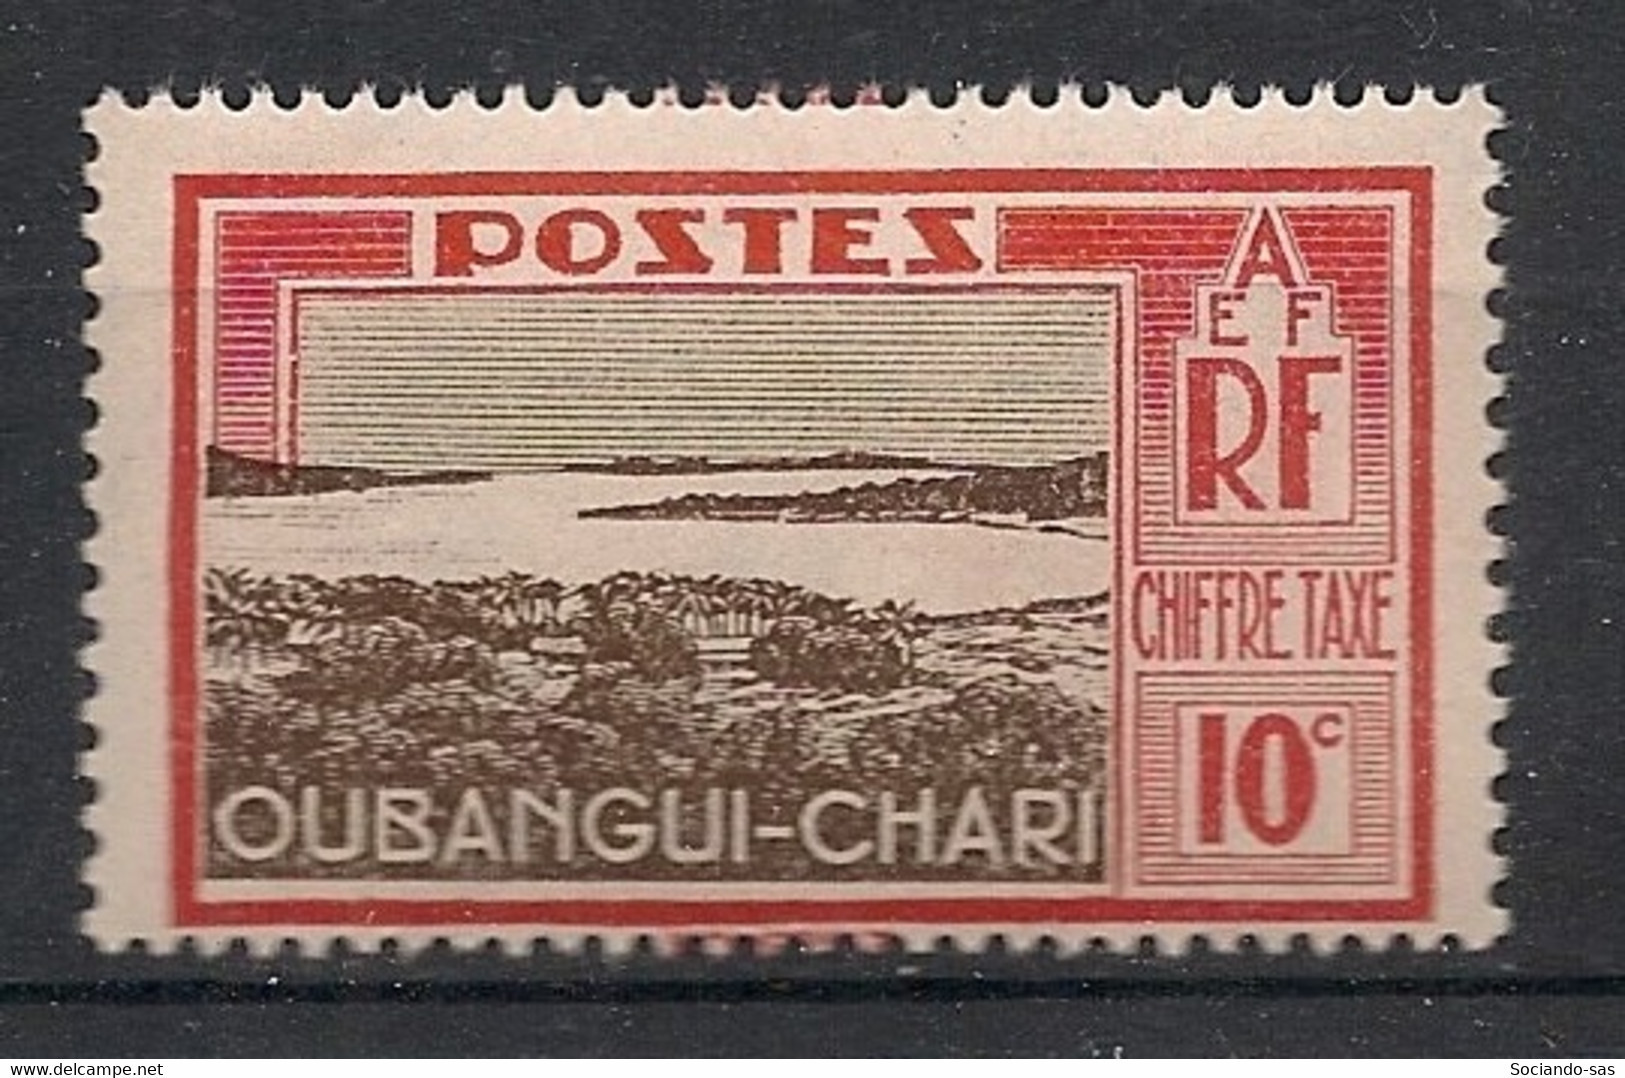 OUBANGUI - 1930 - Taxe TT N°Yv. 13 - Mobaye 10c - Neuf Luxe ** / MNH / Postfrisch - Neufs